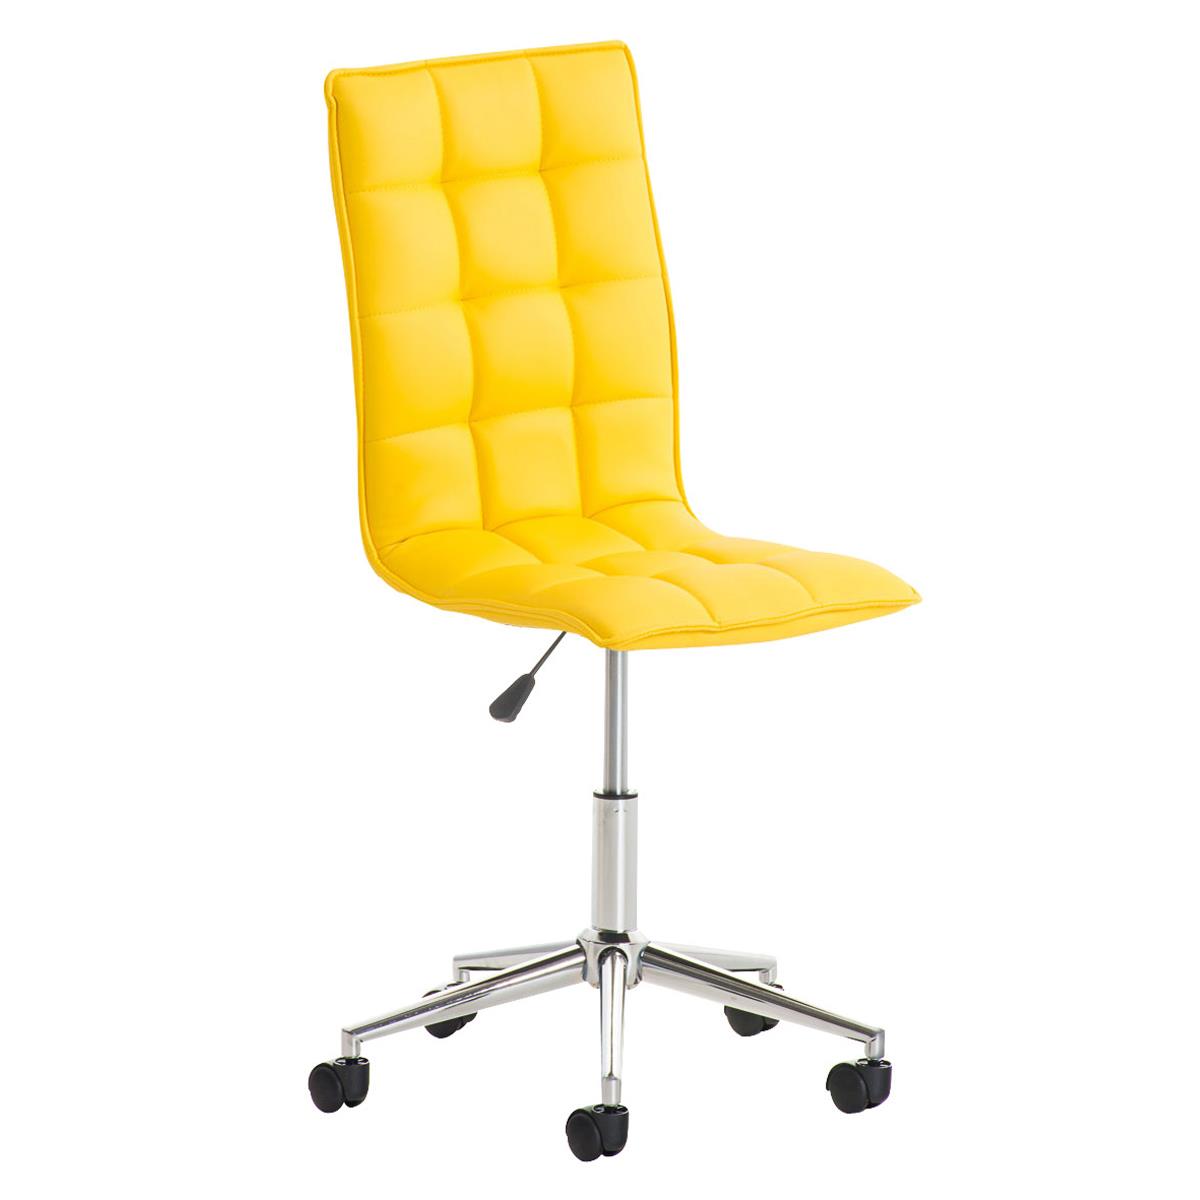 Bürostuhl BULGARI, elegantes Design, höhenverstellbar, Metallfußkreuz, Lederbezug, Farbe Gelb